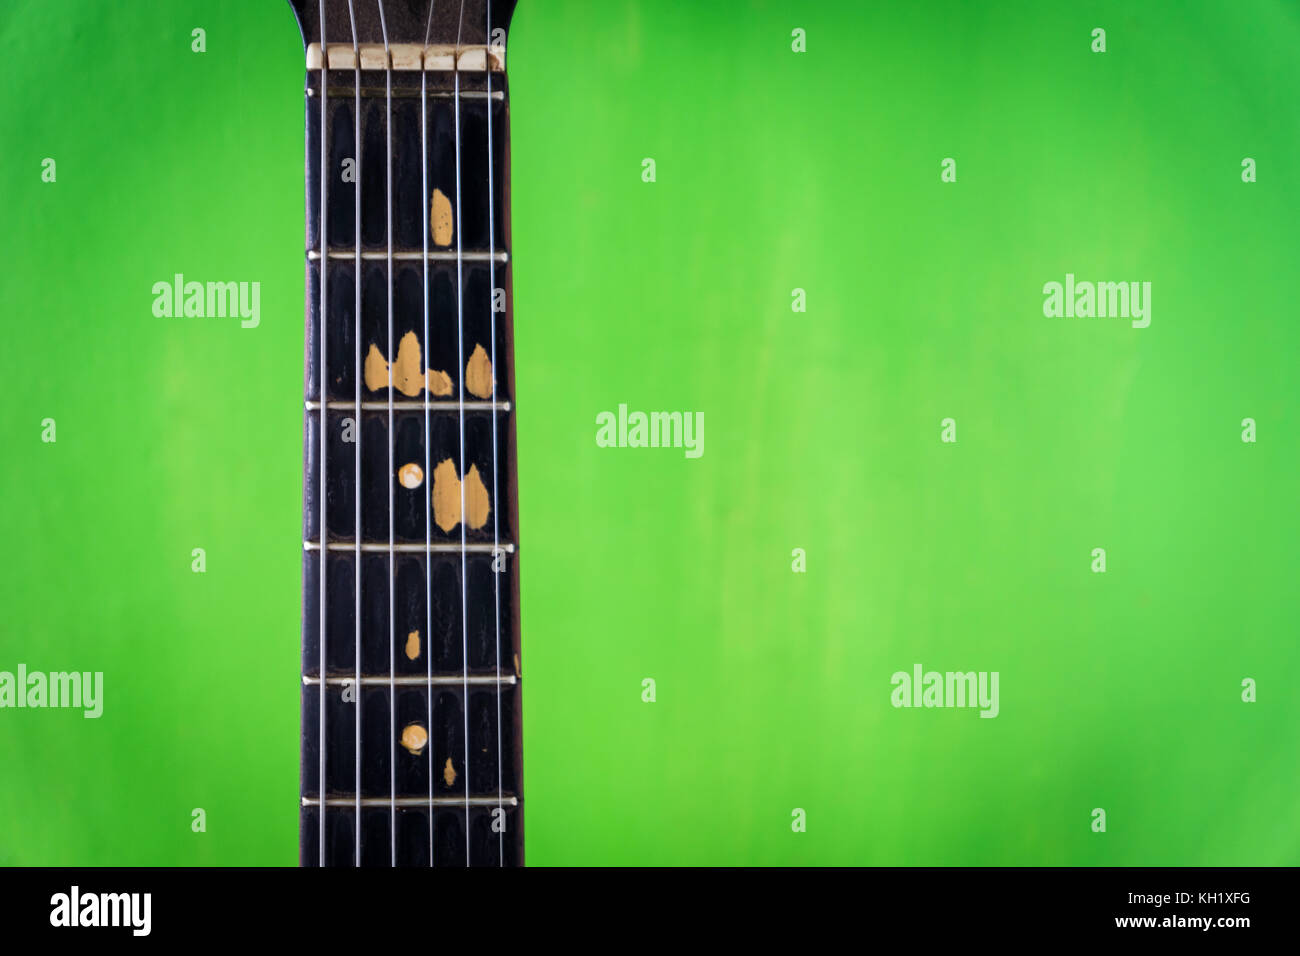 Alte akustische Gitarre auf grüne Farbe Wand Hintergrund - vintage grunge Stil mit abgebrochenen Griffbrett Stockfoto